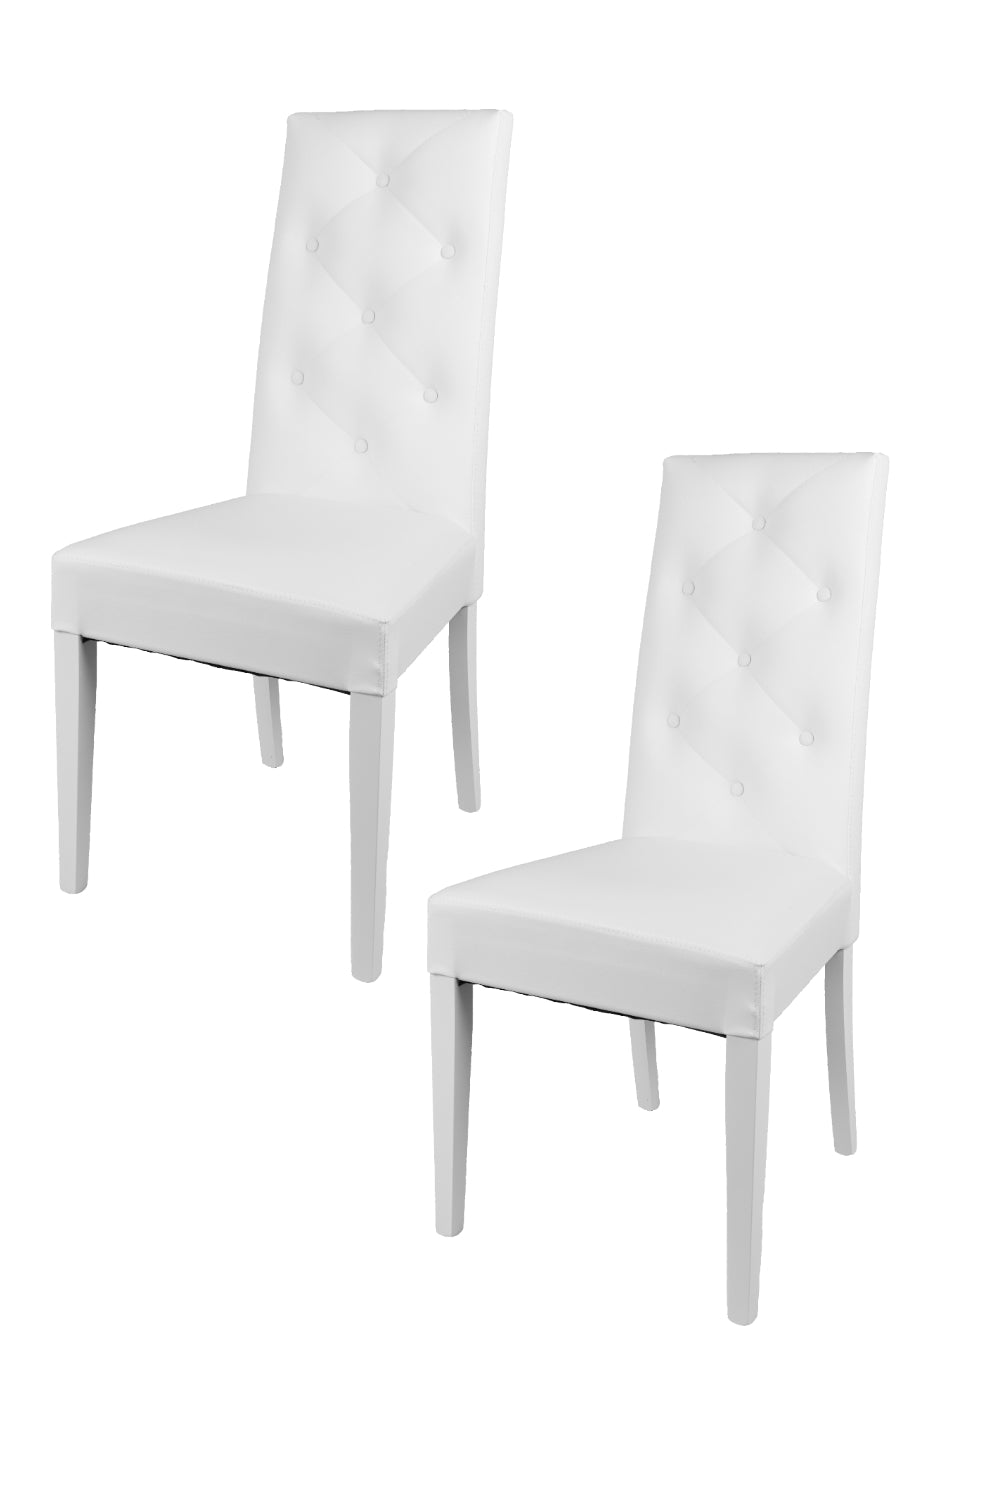 Tommychairs - Set 2 sillas de Cocina, Comedor, Bar y Restaurante Chantal, solida Estructura en Madera de Haya y Asiento tapizado en Polipiel Blanco